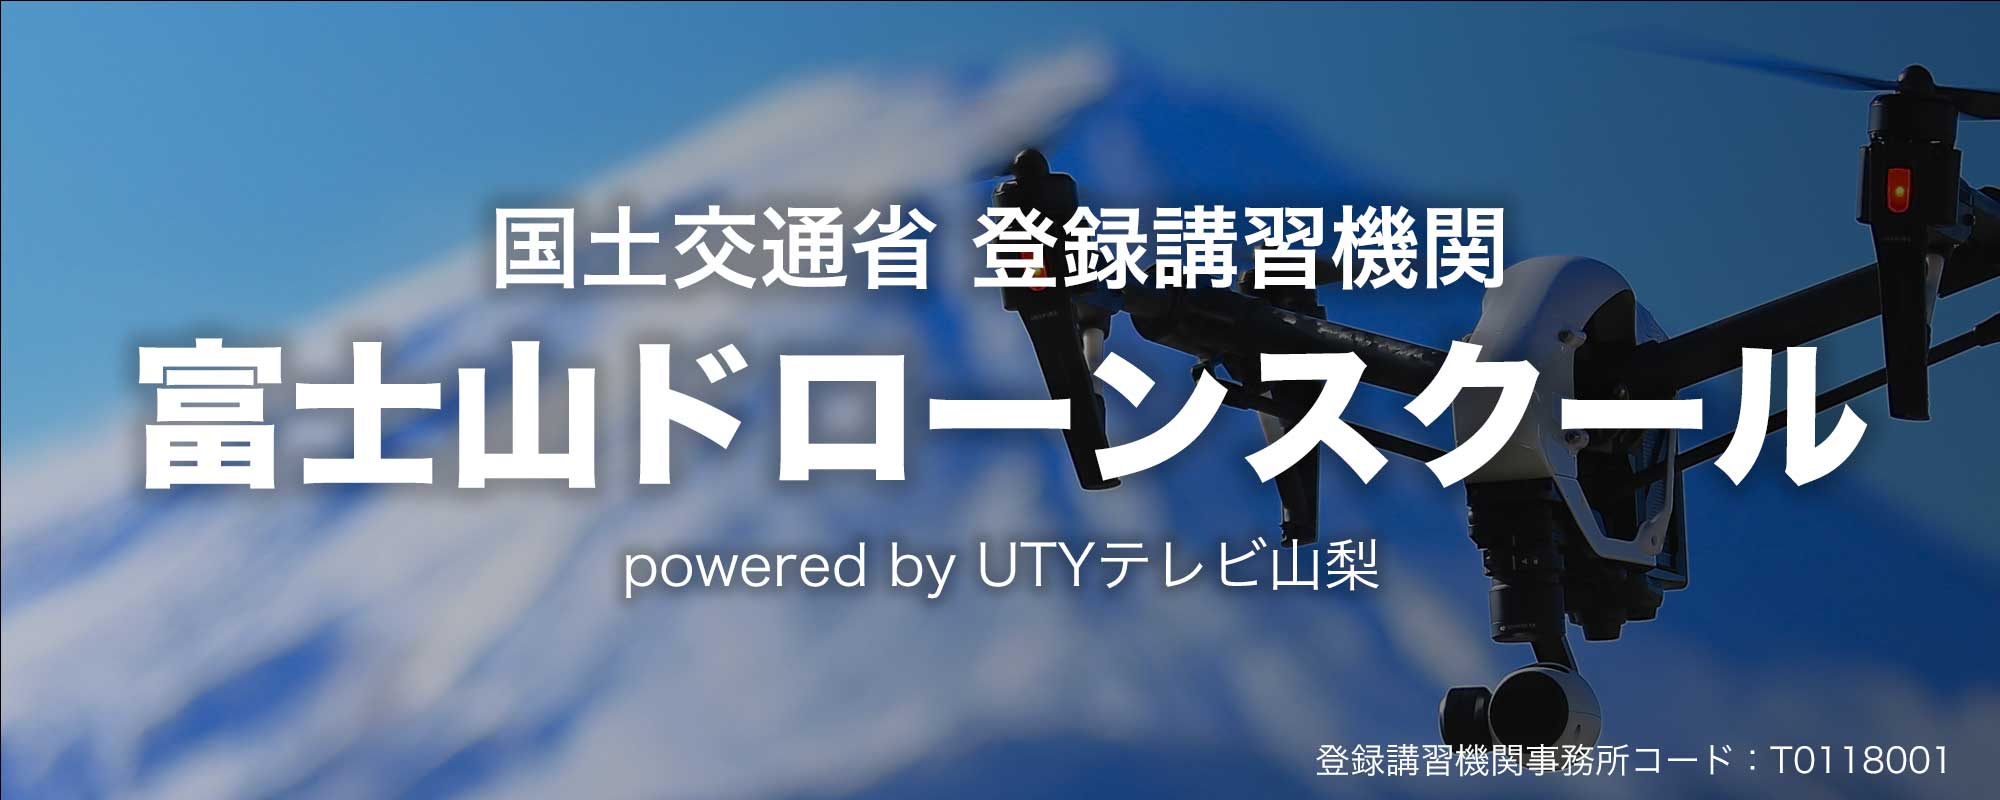 国土交通省 紅緑講習機関 富士山ドローンスクール powered by UTY テレビ山梨